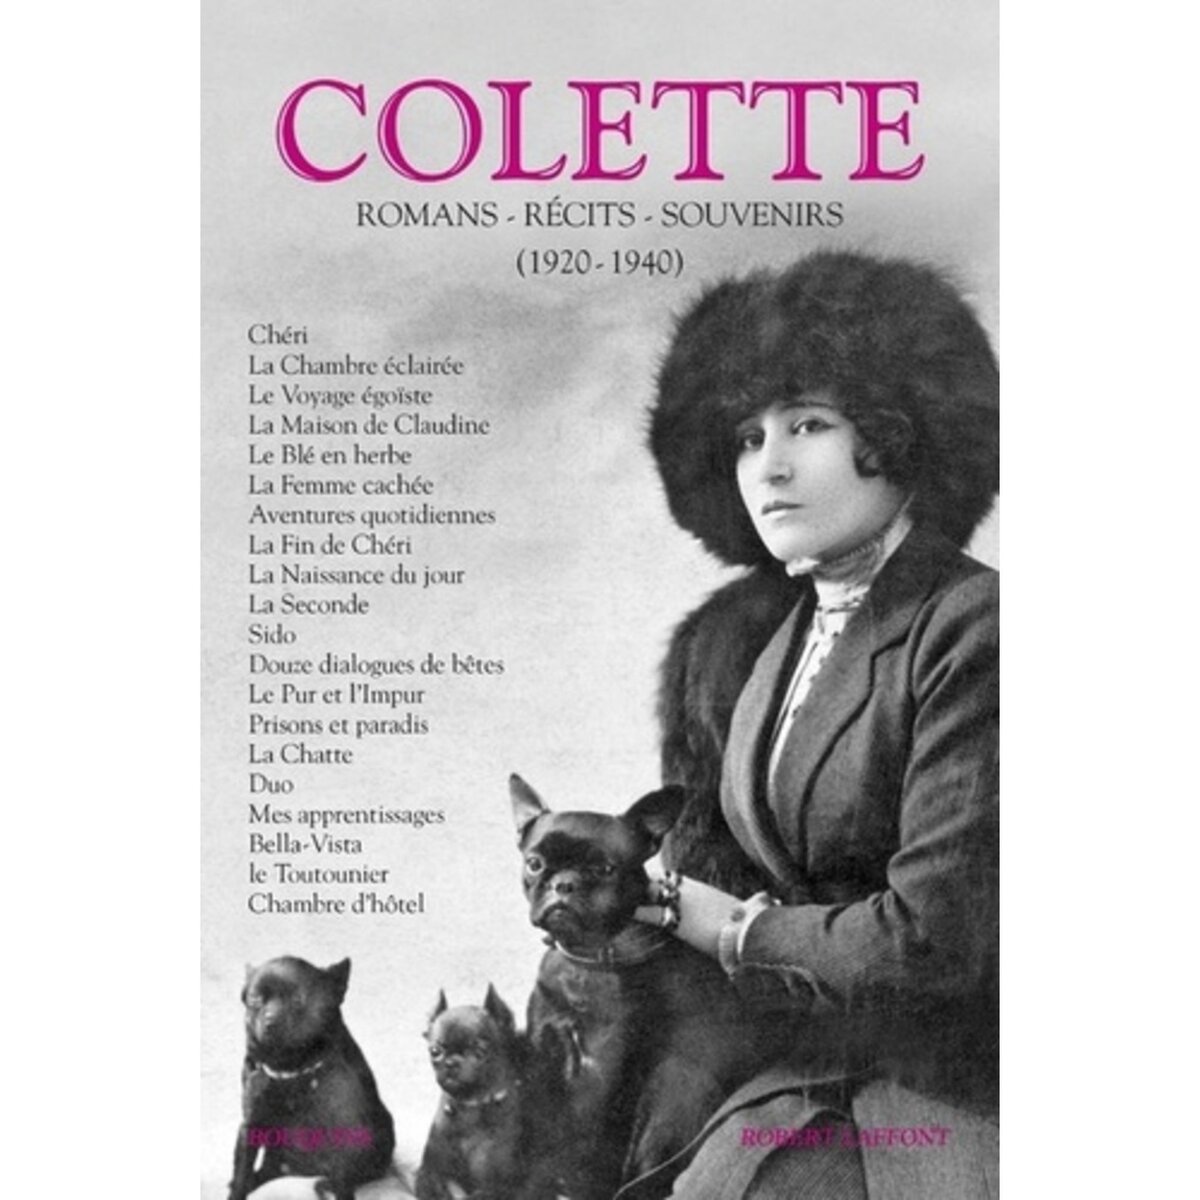  COLETTE. VOLUME 2, ROMANS, RECITS, SOUVENIRS (1920-1940), Colette